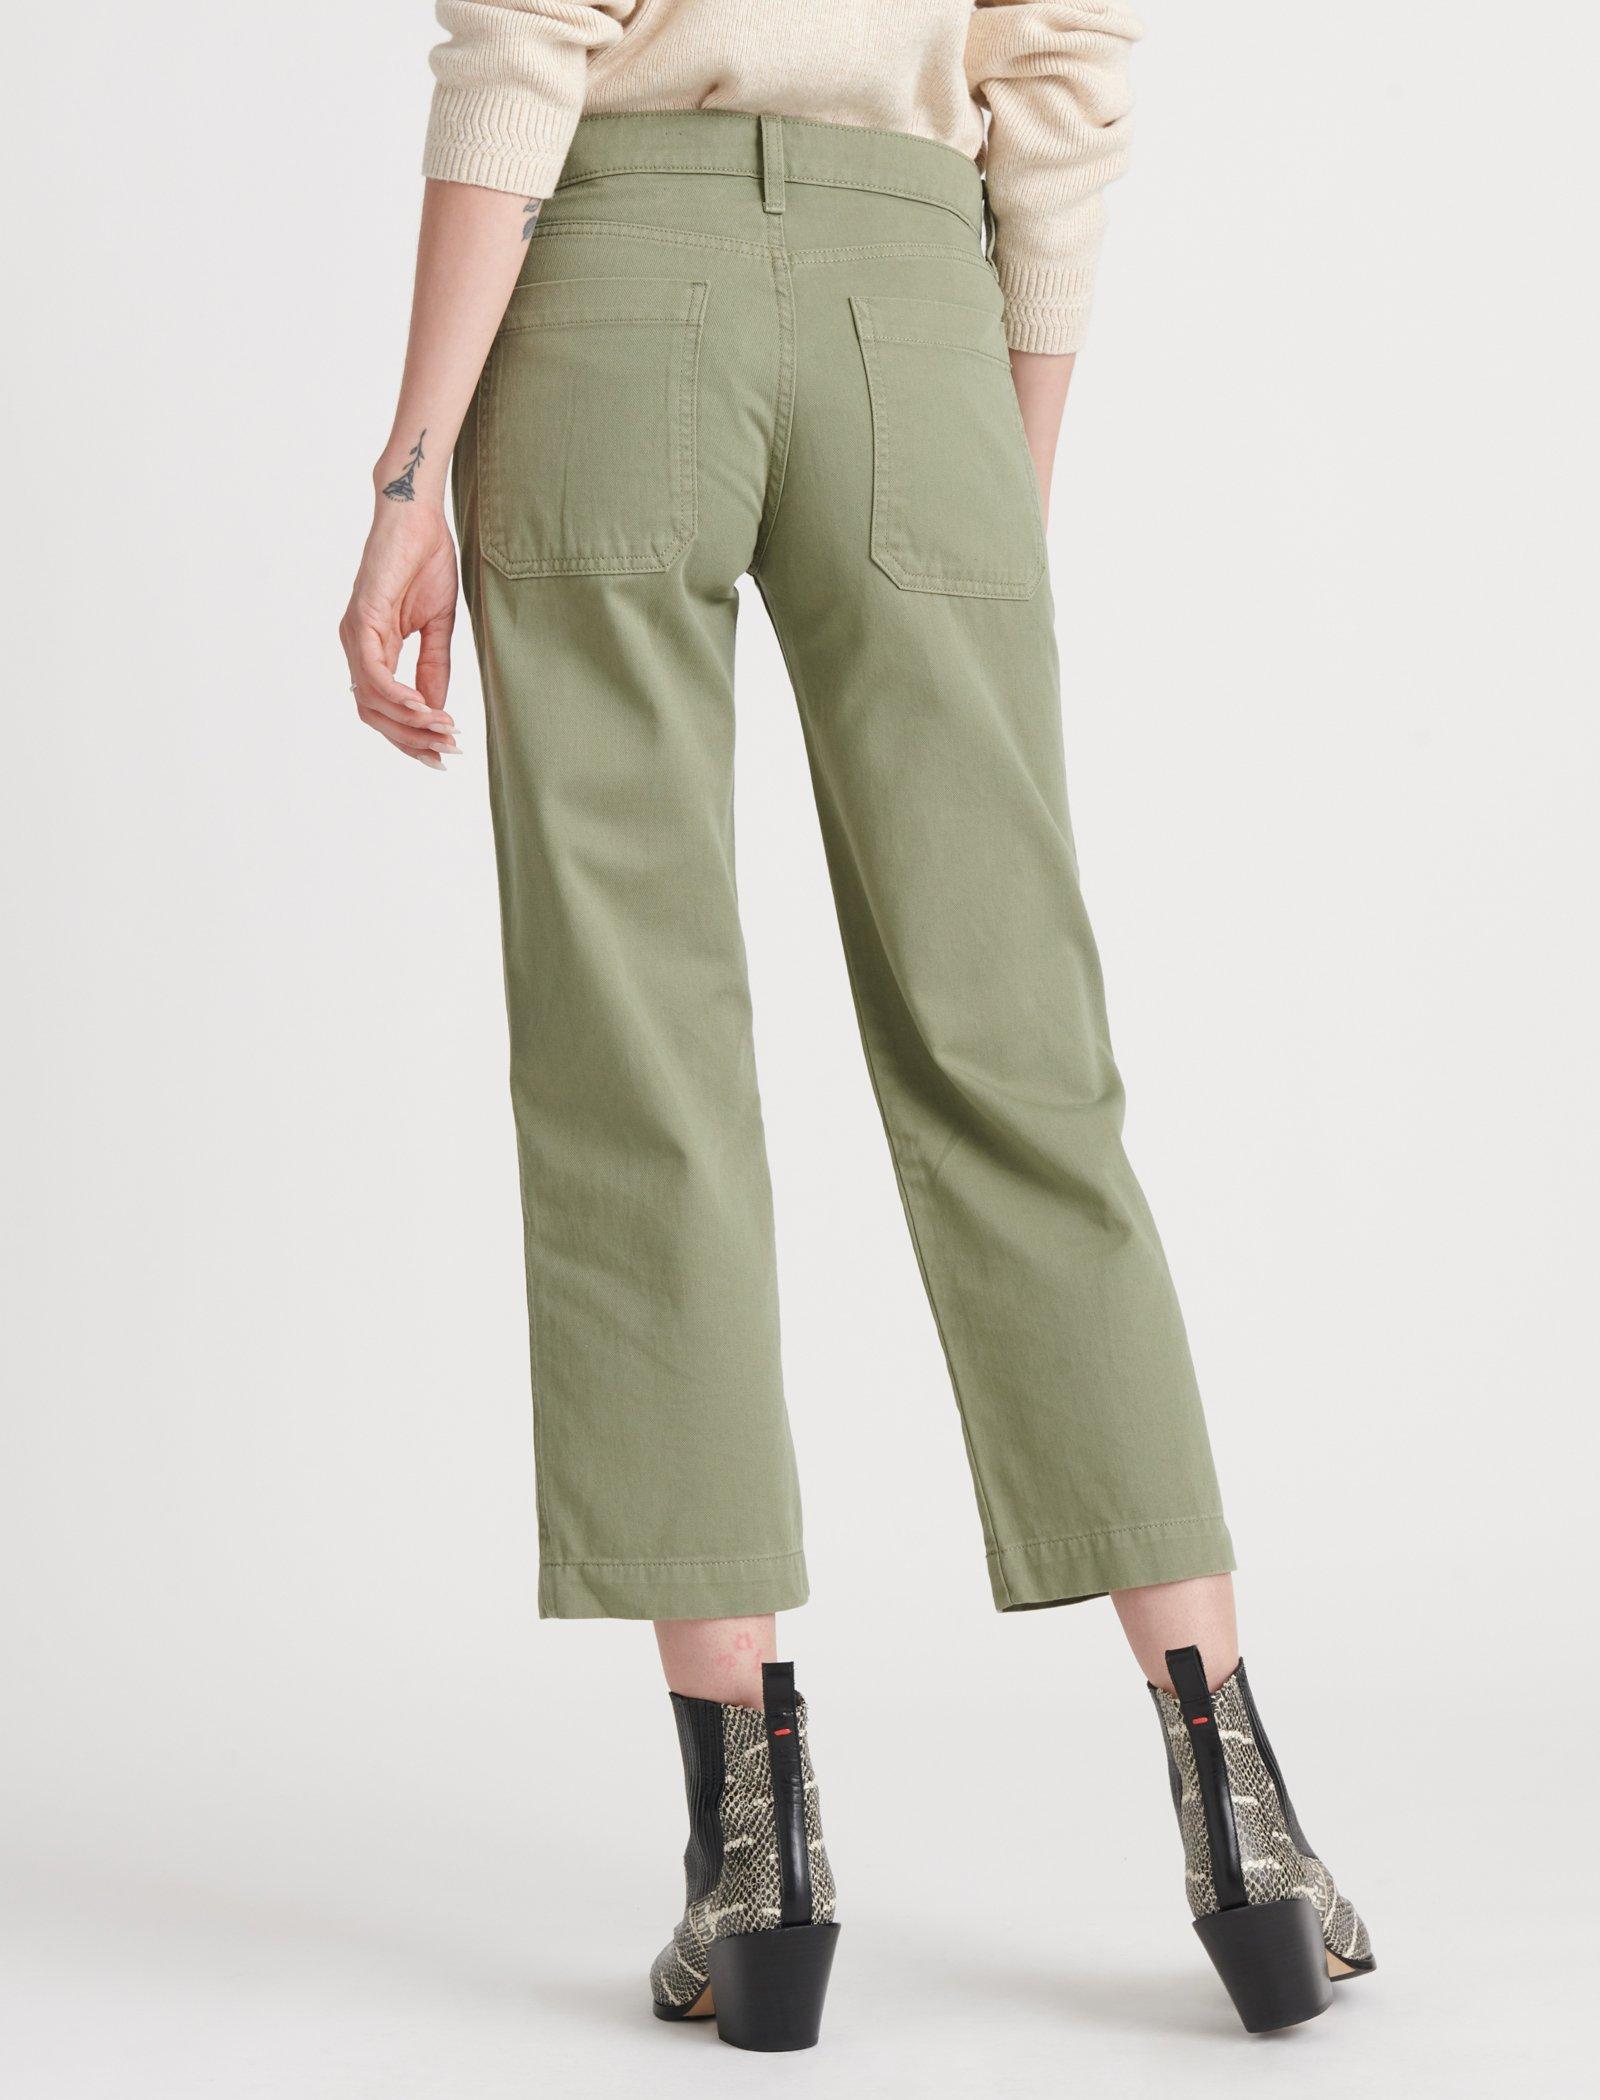 Lucky Brand Women's Mid Rise Crop Wide Leg Jean, Garford, 29W x